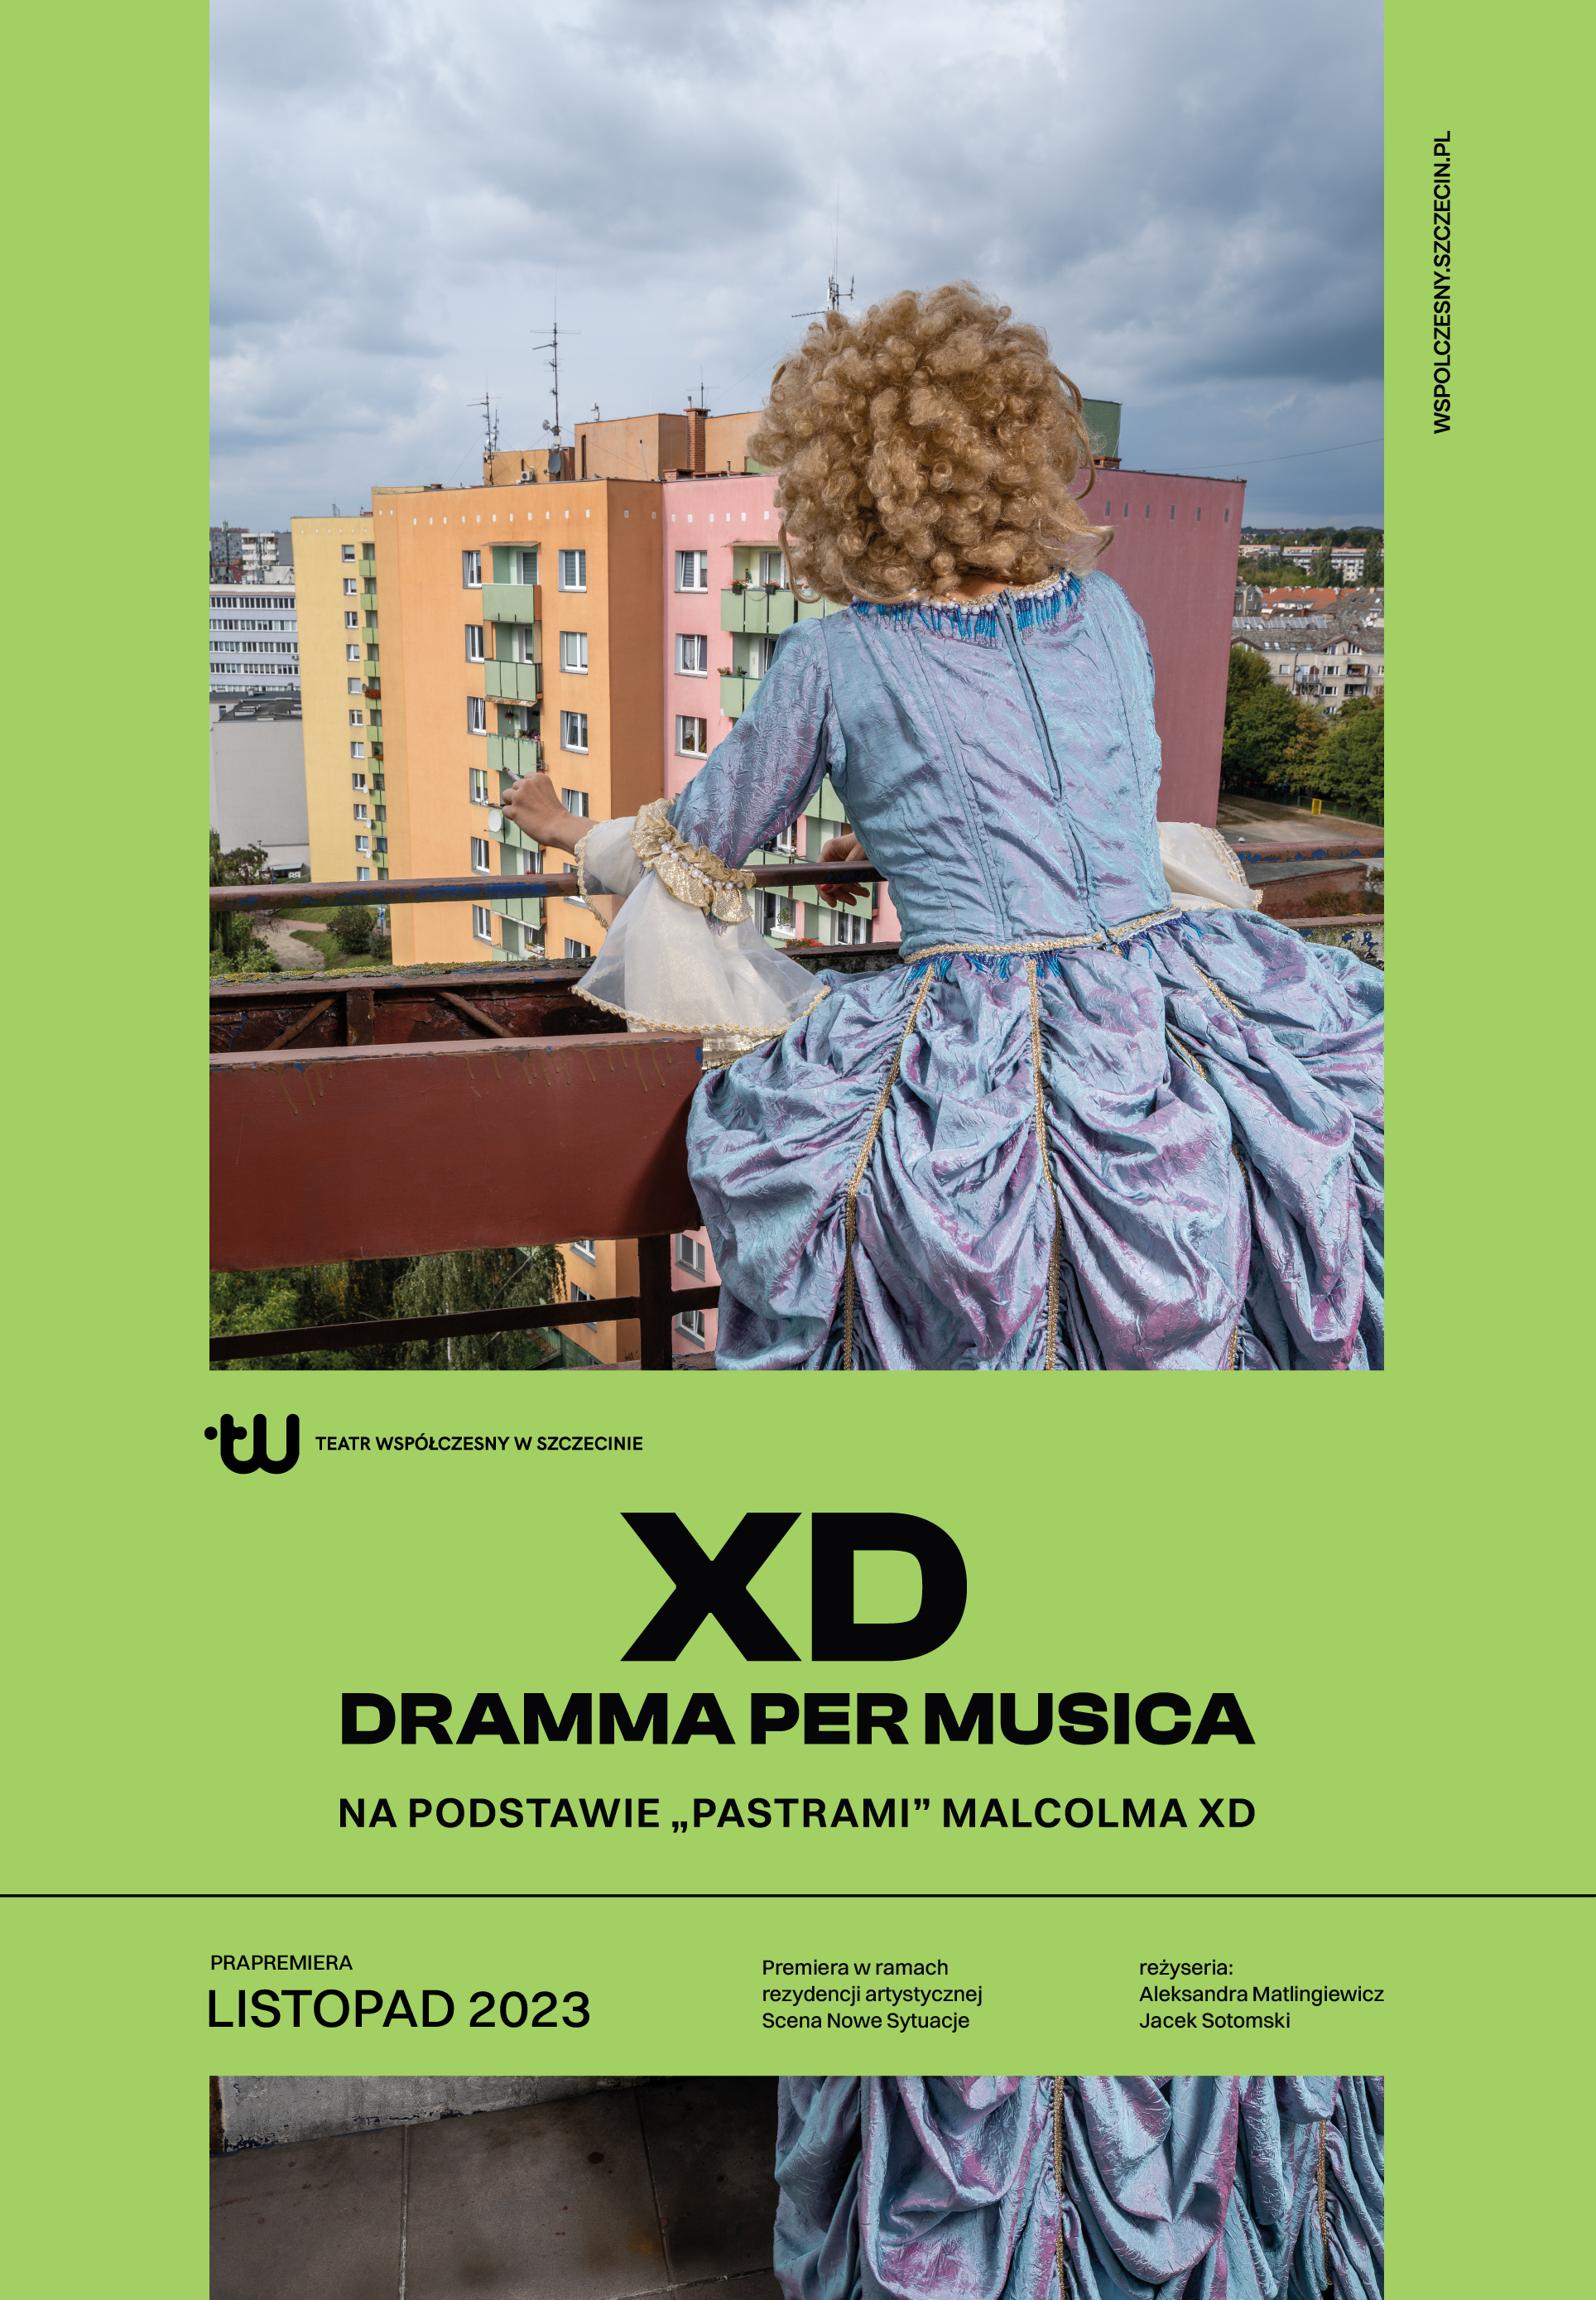 Plakat do spektaklu "XD. Dramma per musica". Na balkonie, w sukni barokowej stoi kobieta i patrzy na kolorowe bloki.